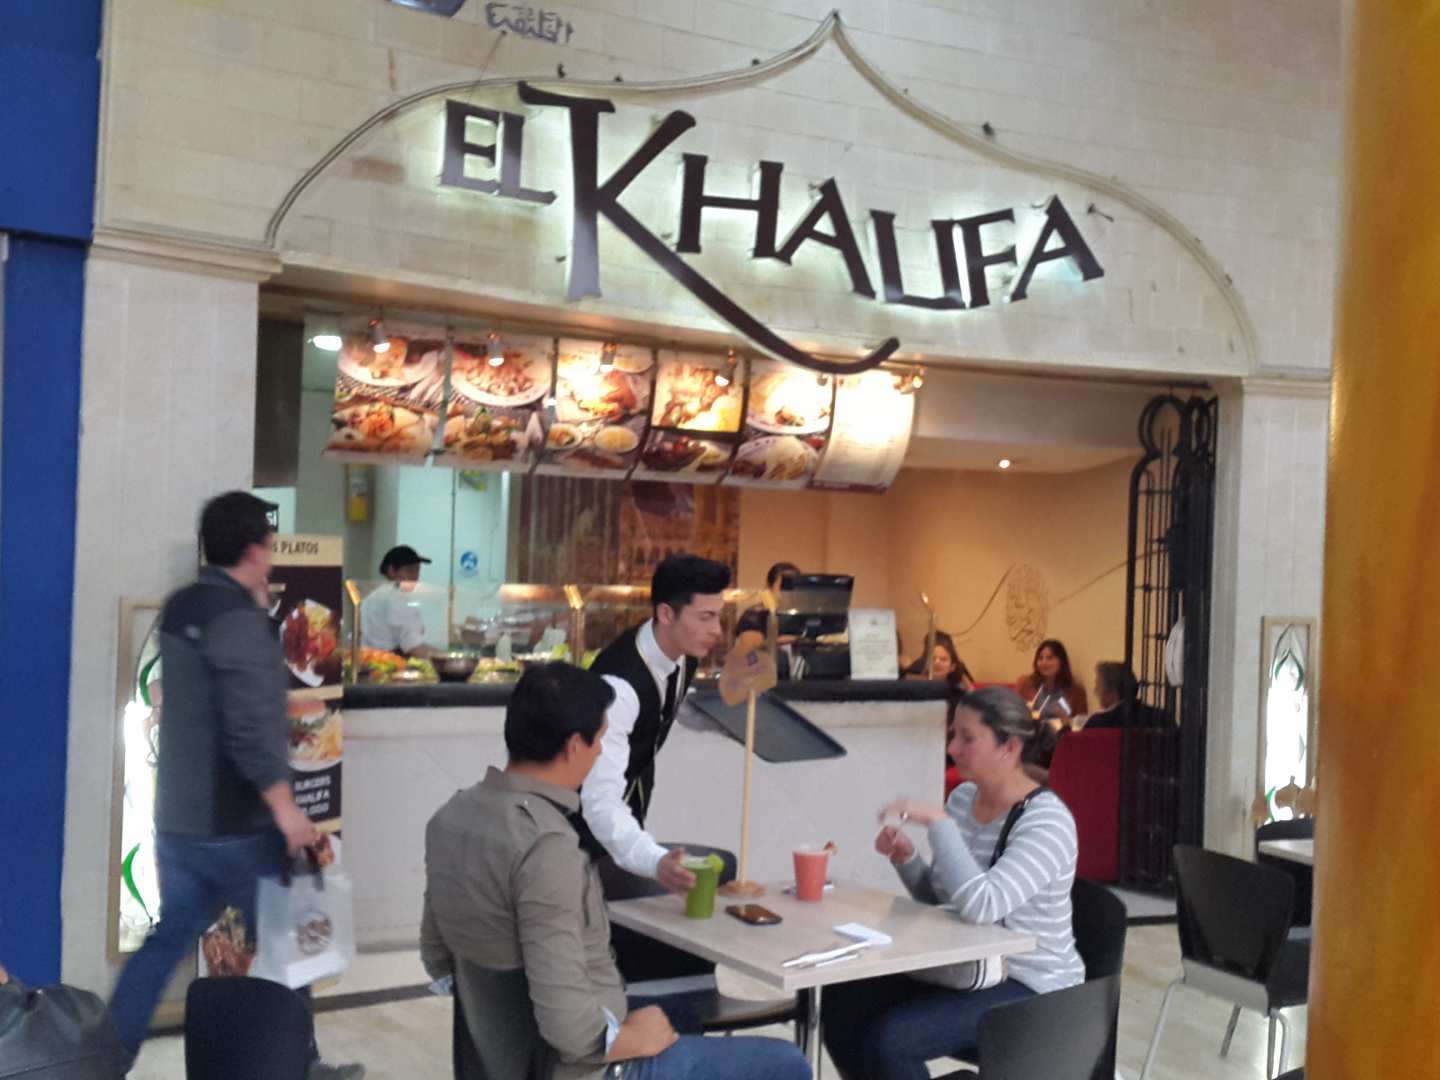 El Khalifa (Usaquén)